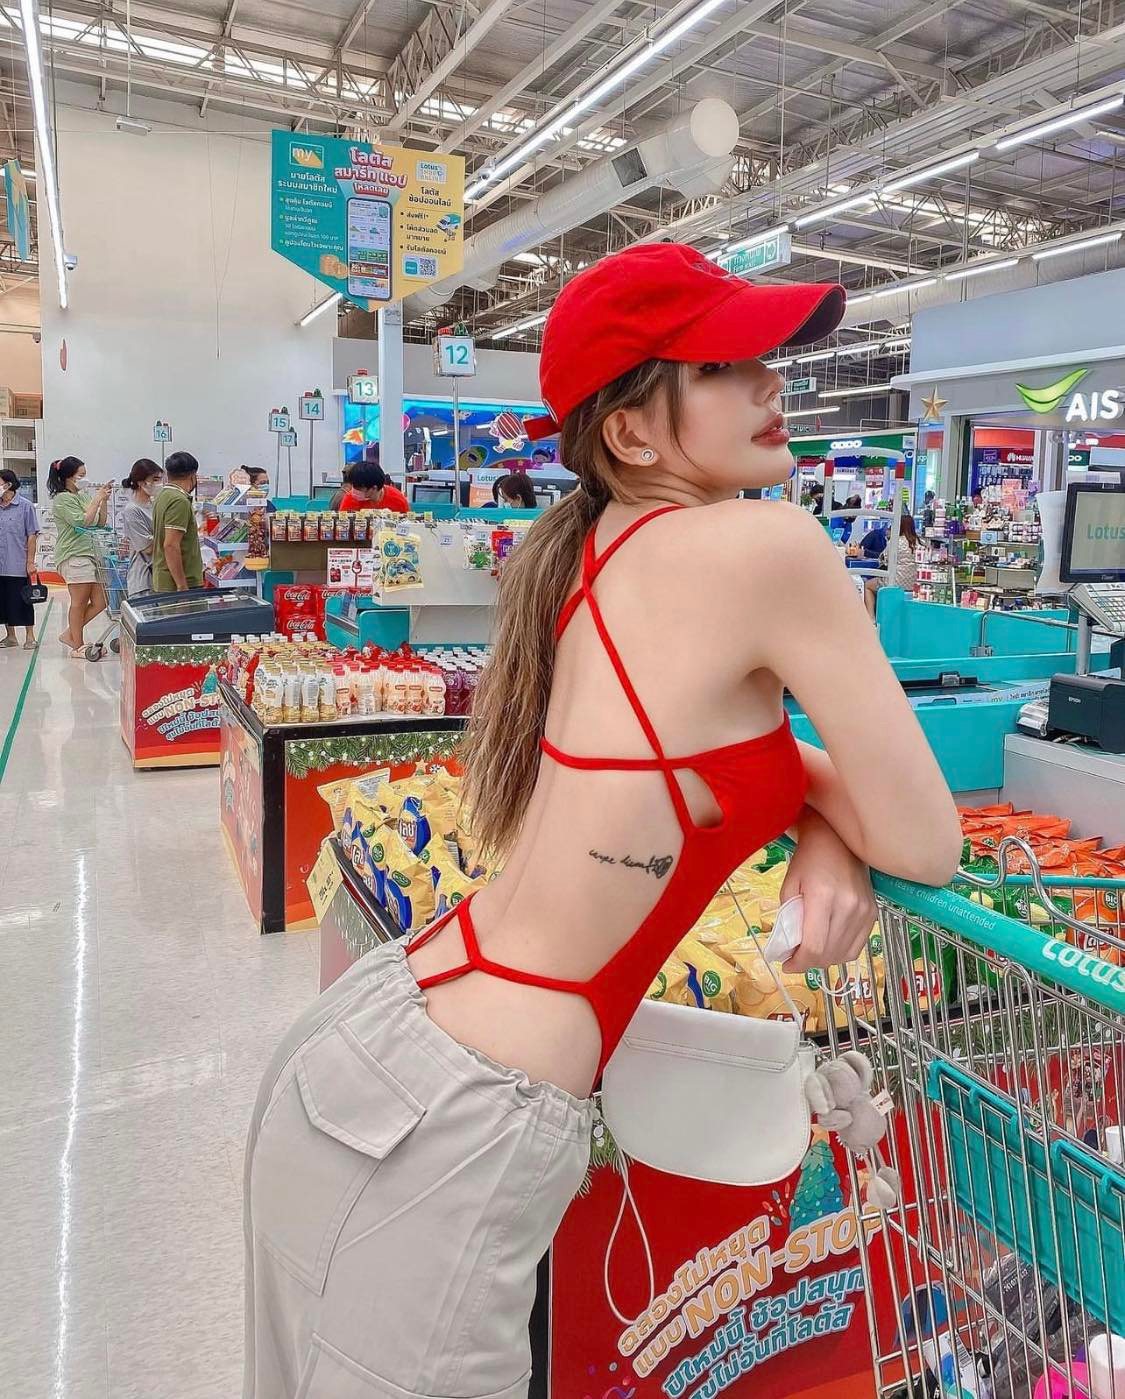 Du học sinh Úc bị phản ứng vì trang phục ở siêu thị - 3